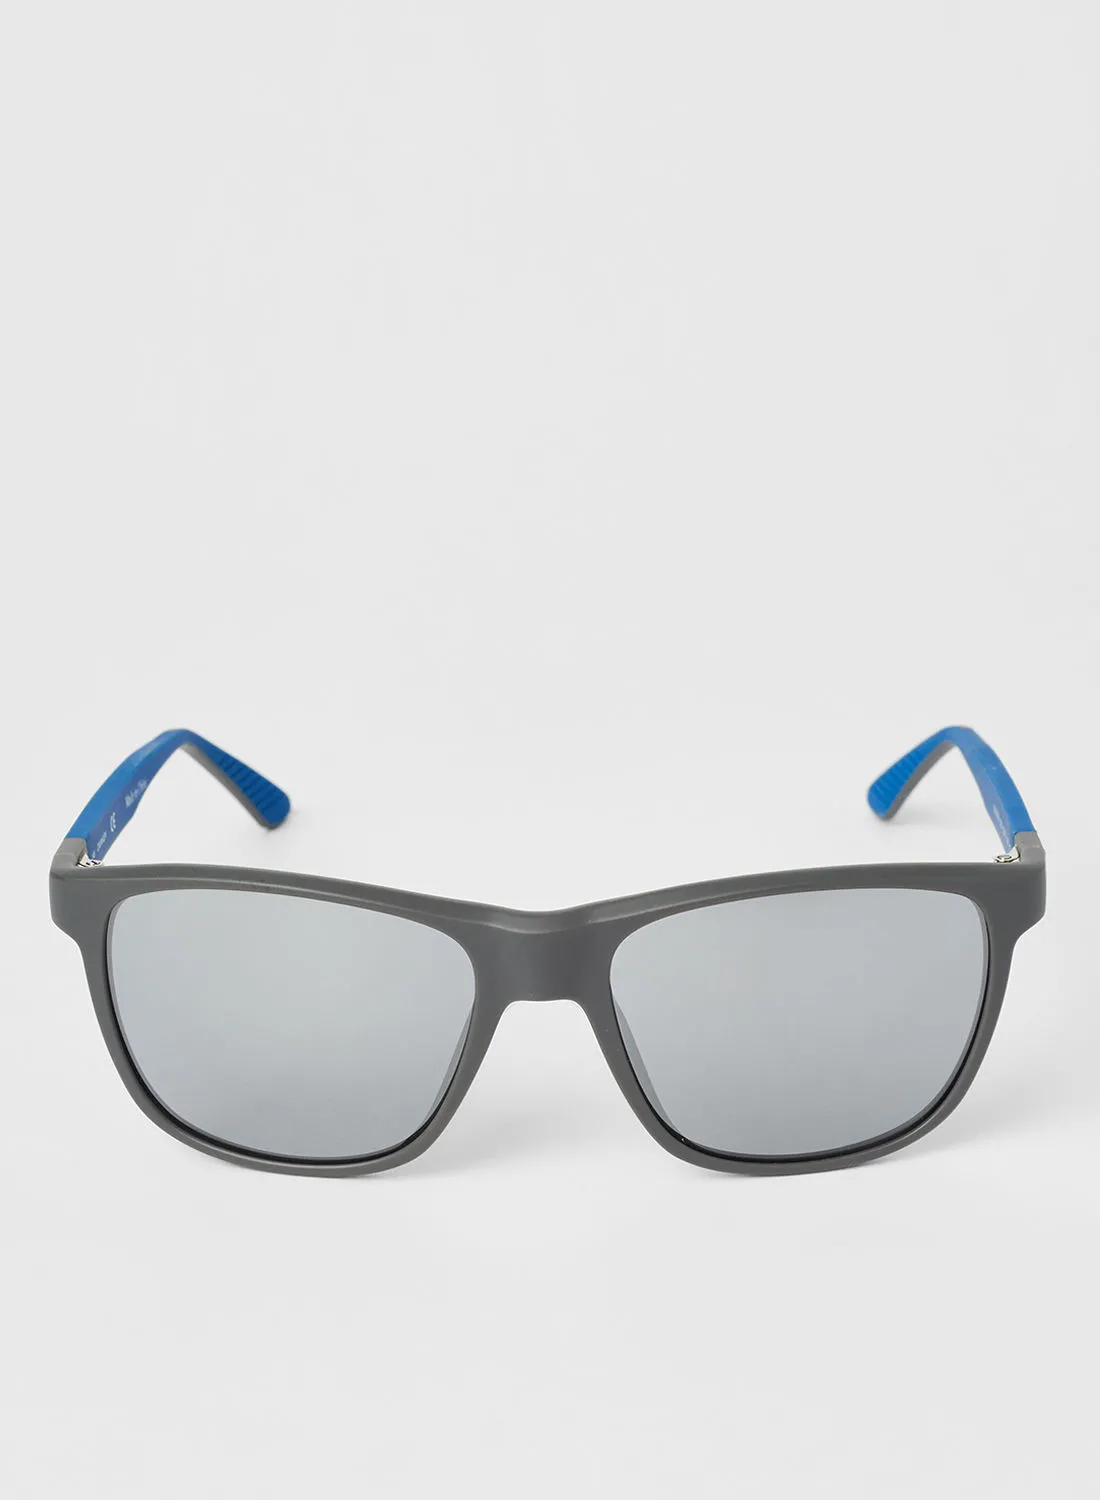 CALVIN KLEIN Men's Full-Rim TR90 Modified Rectangle Sunglasses - Lens Size: 55 mm